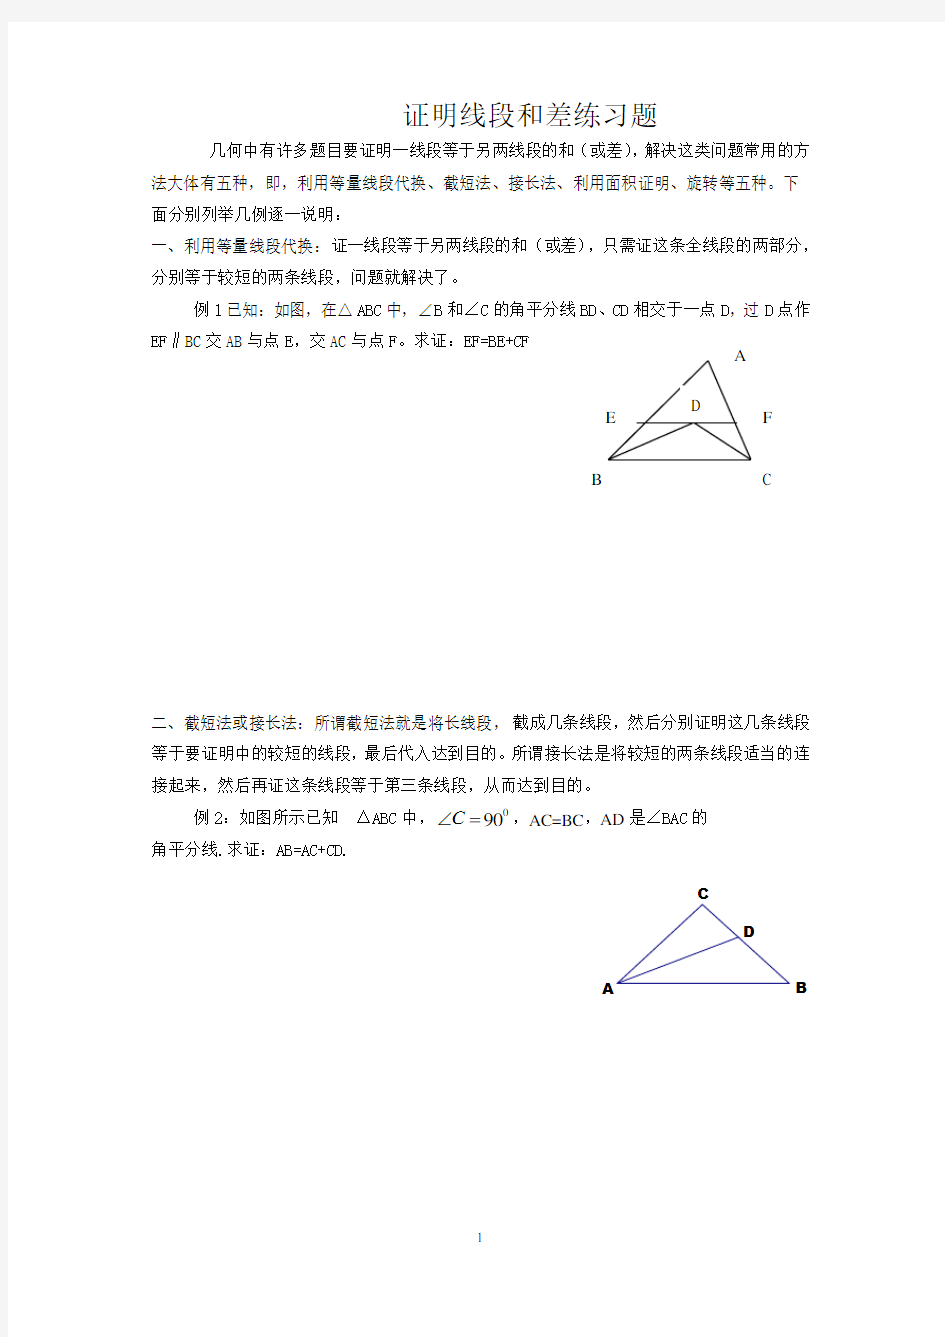 证明线段和差练习题(三角形全等)